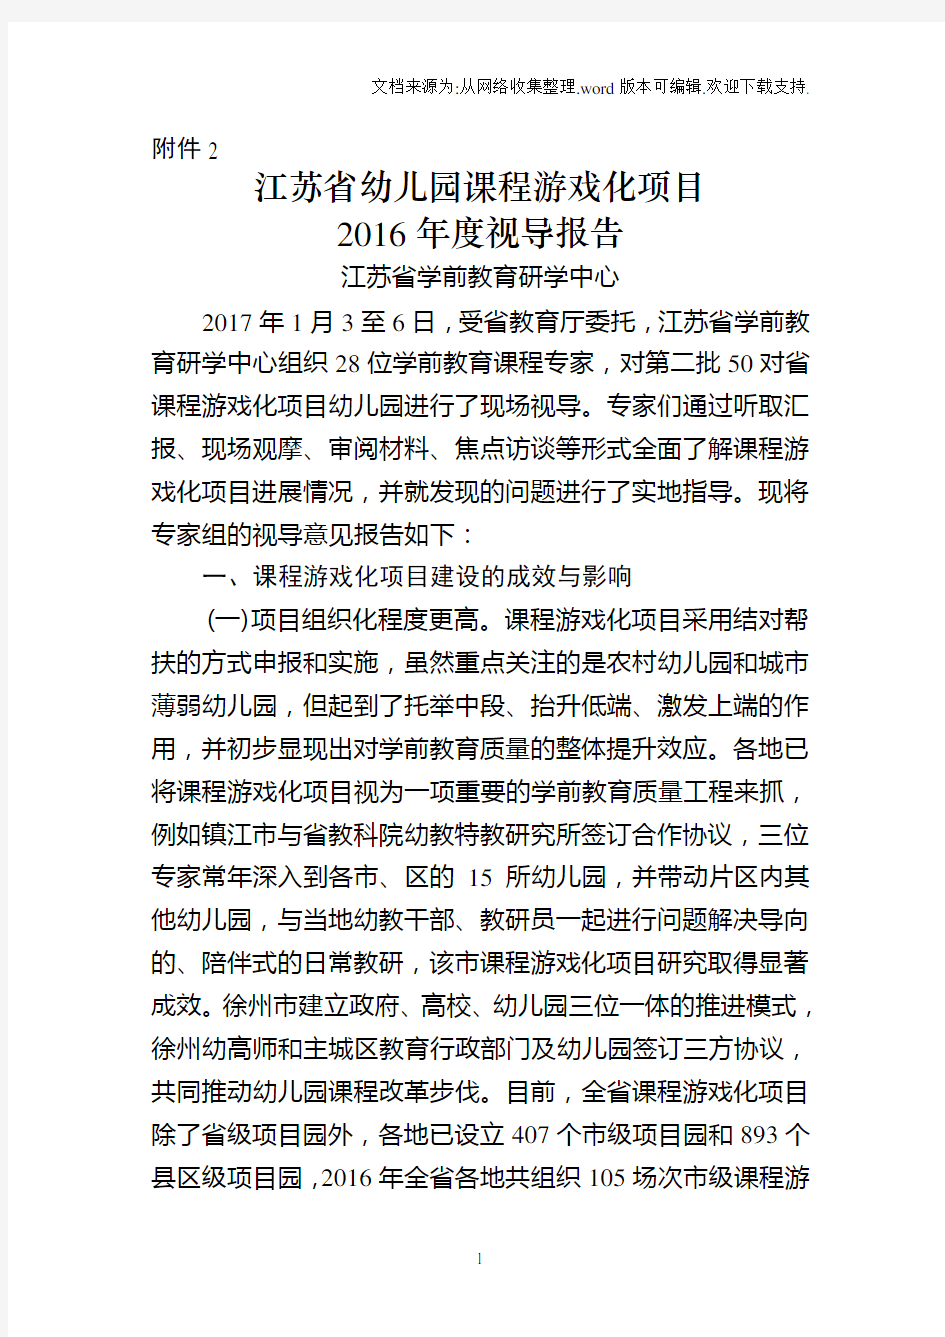 2.江苏省幼儿园课程游戏化项目“2020年度视导报告